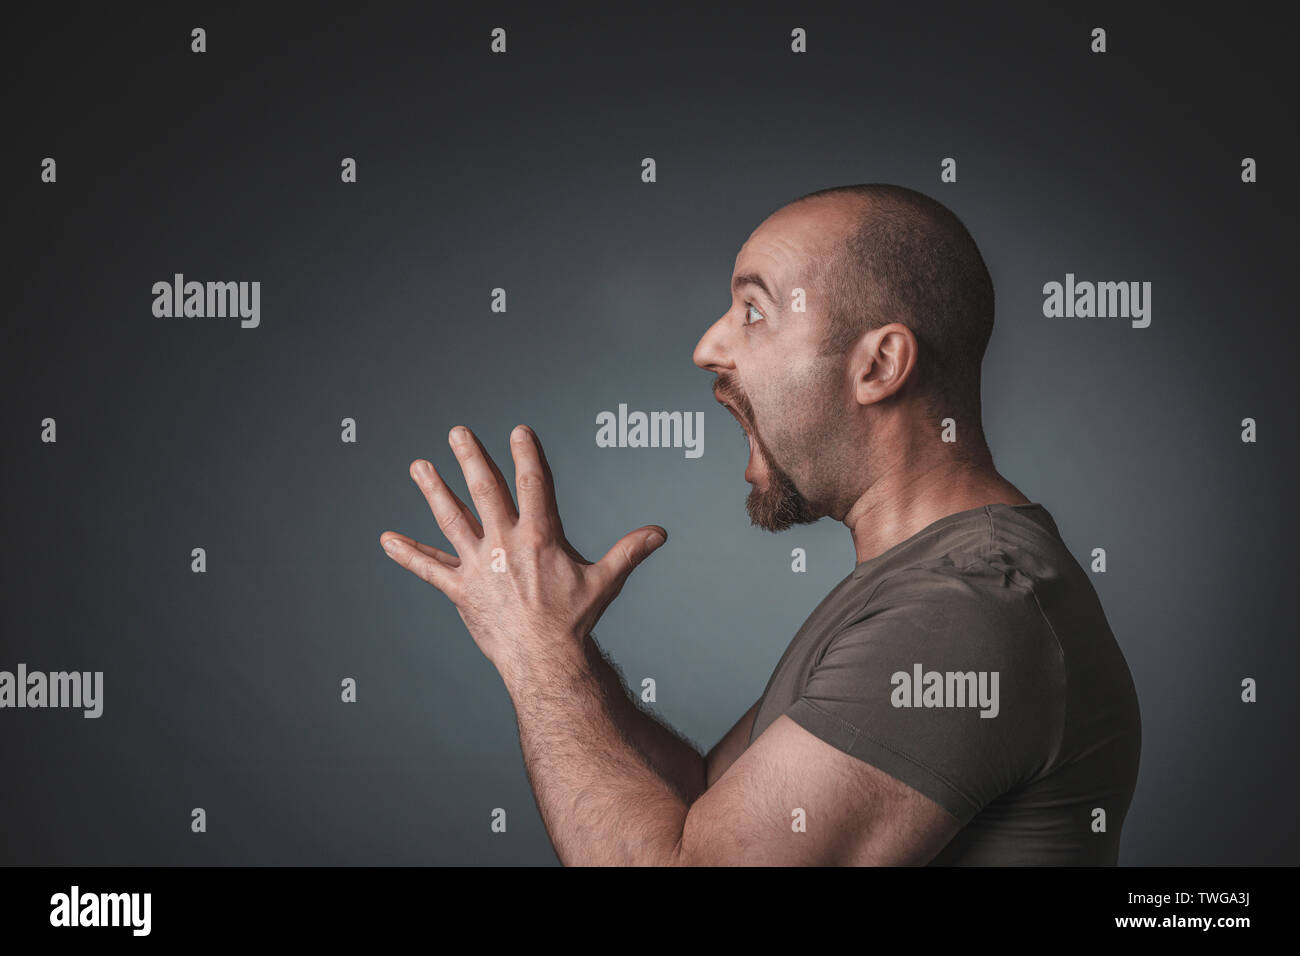 Ritratto in studio di un uomo con espressioni di sorpresa mani giunte, vista di profilo. Foto Stock